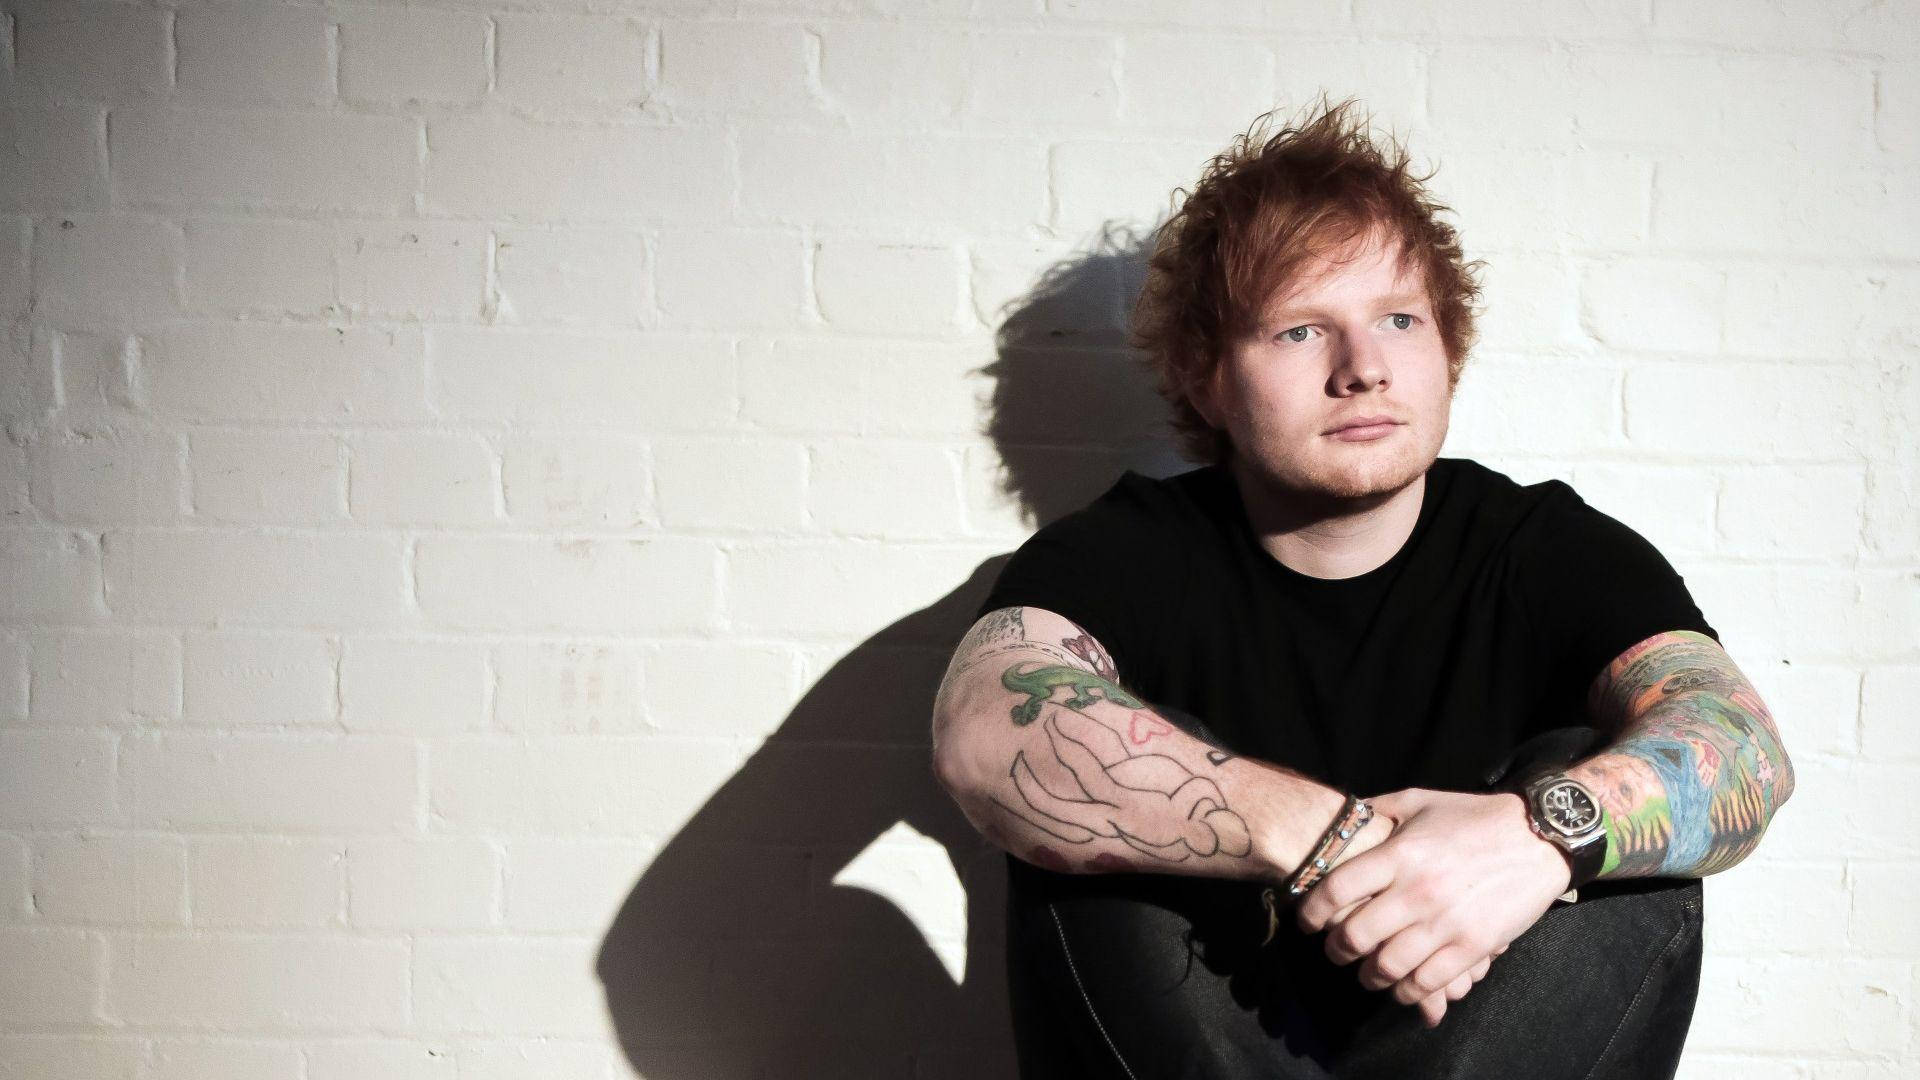 Charming Singer Ed Sheeran Background